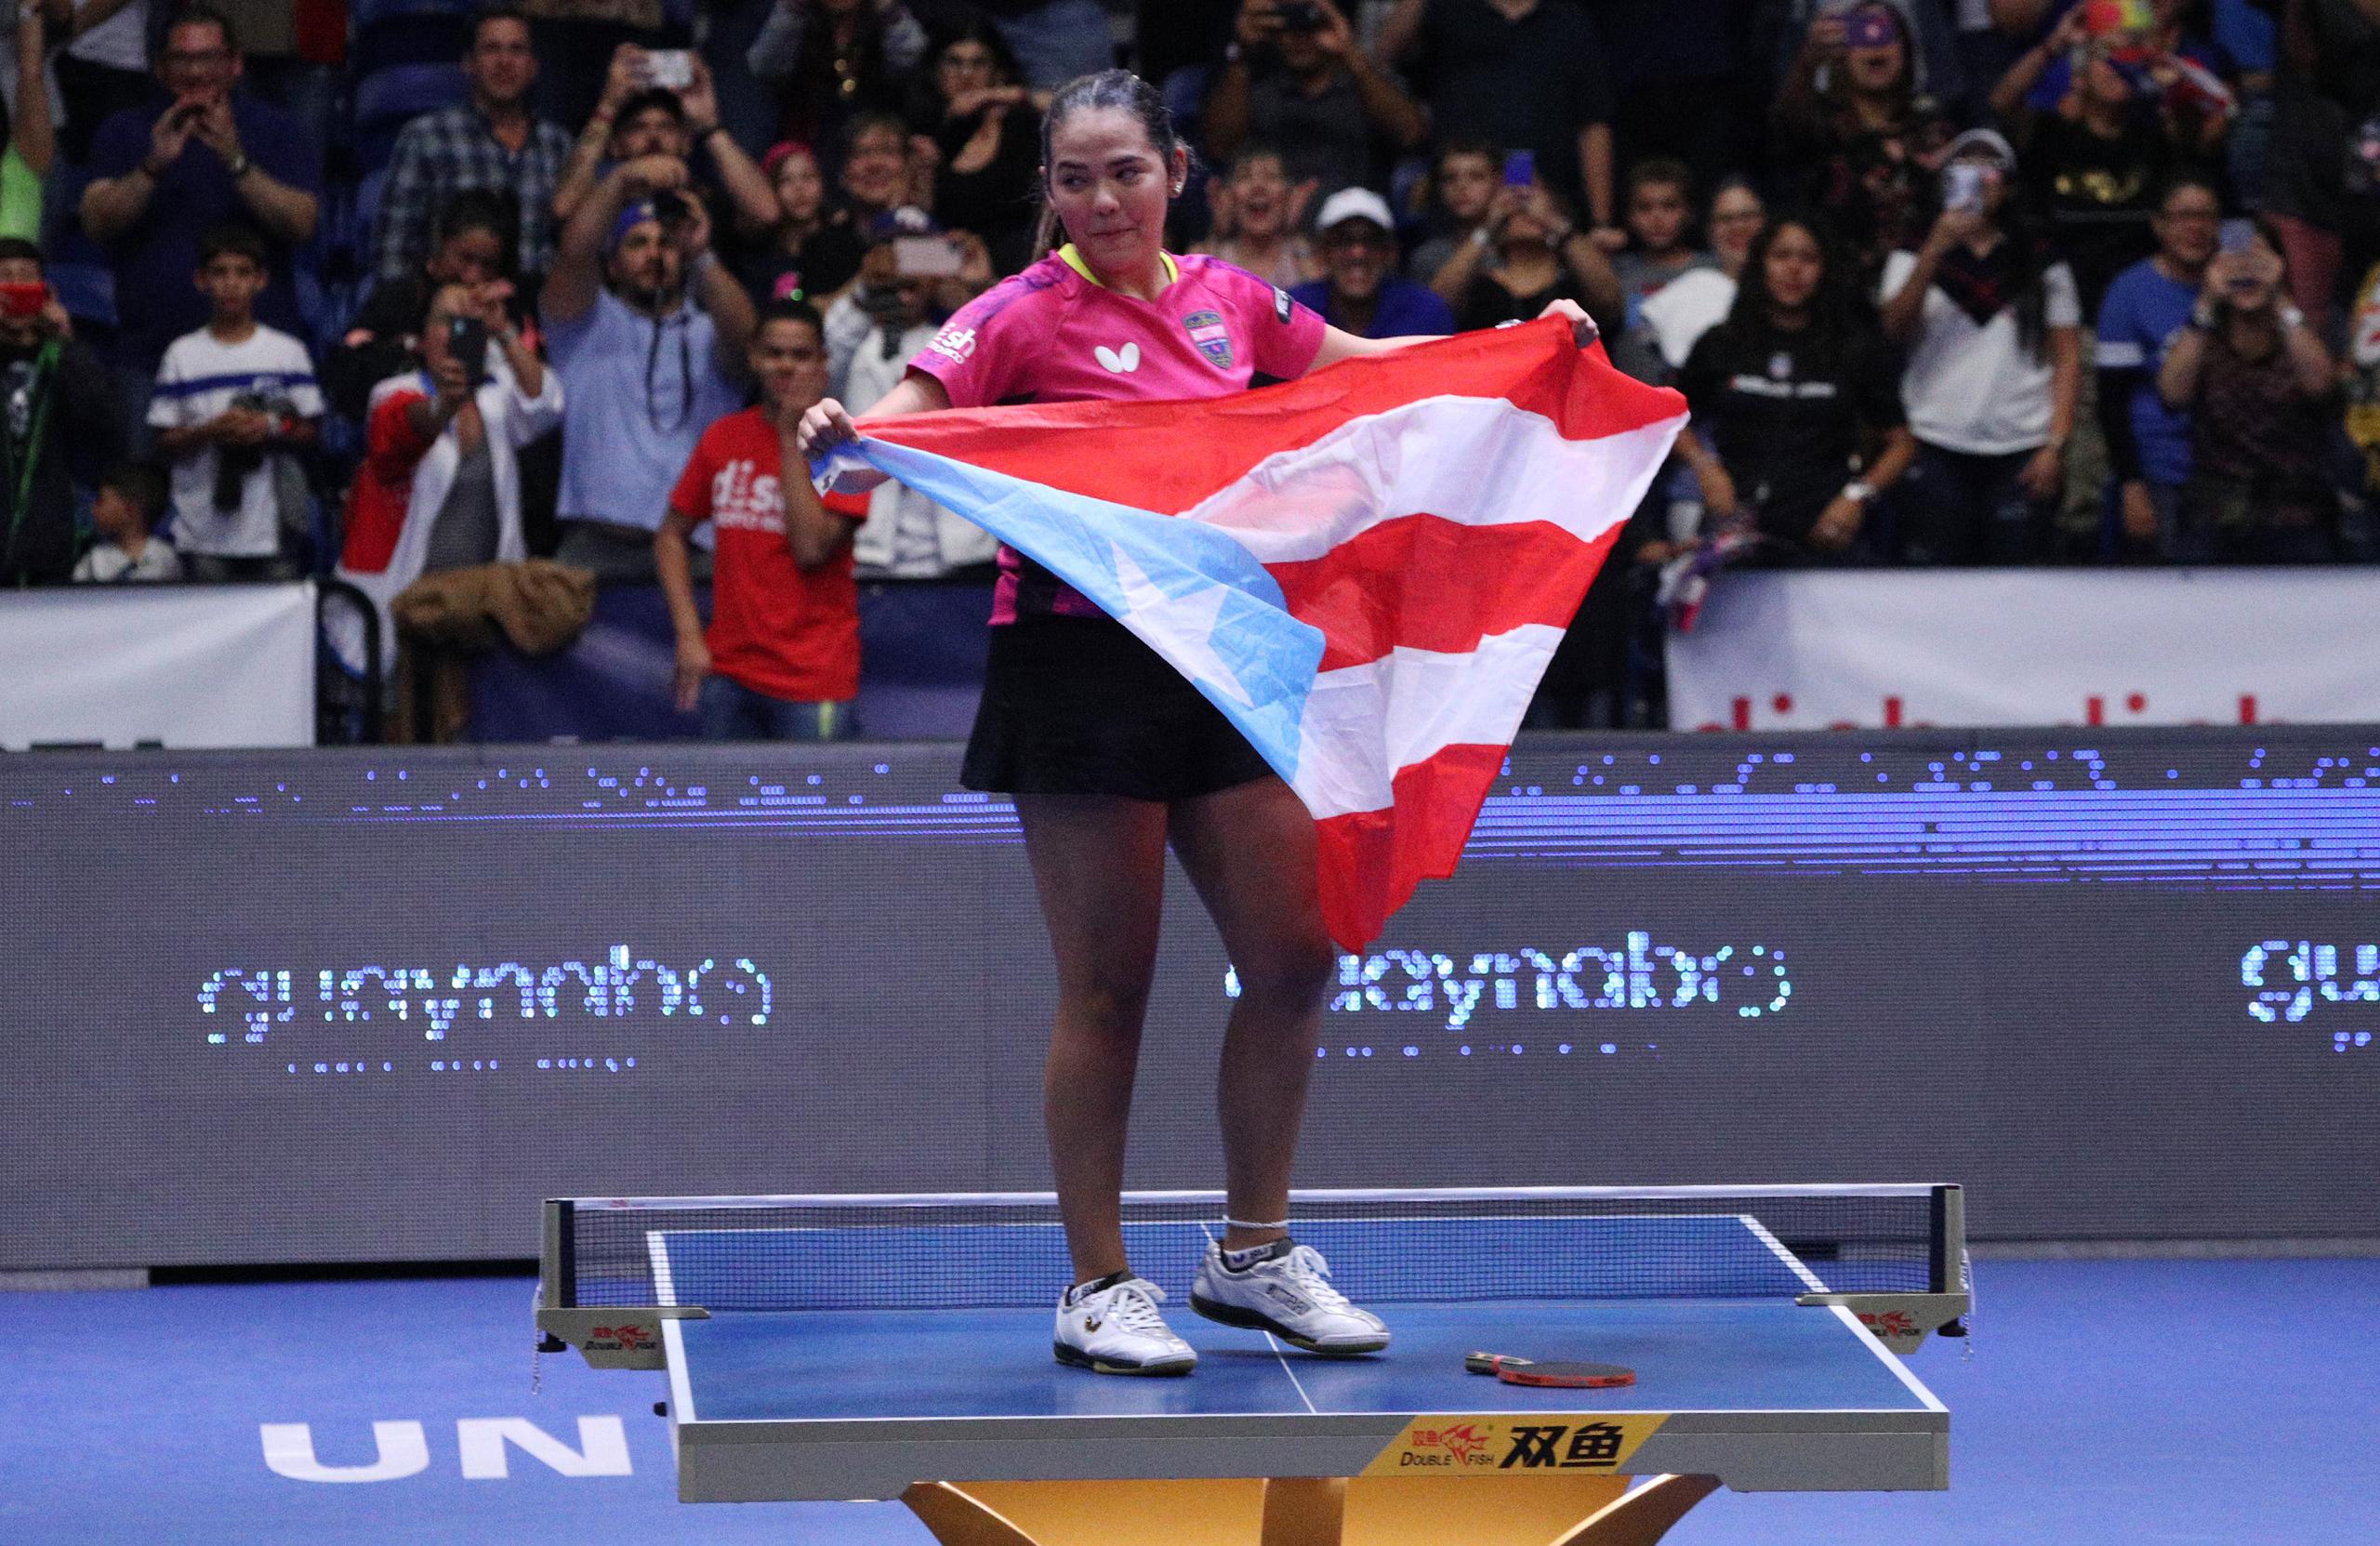 Adriana Díaz es considerada como candidata a ser abanderada en Tokio 2020 debido a sus logros recientes, que incluyen el oro panamericano en Lima 2019, el cual la clasificó a su segunda olimpiada.